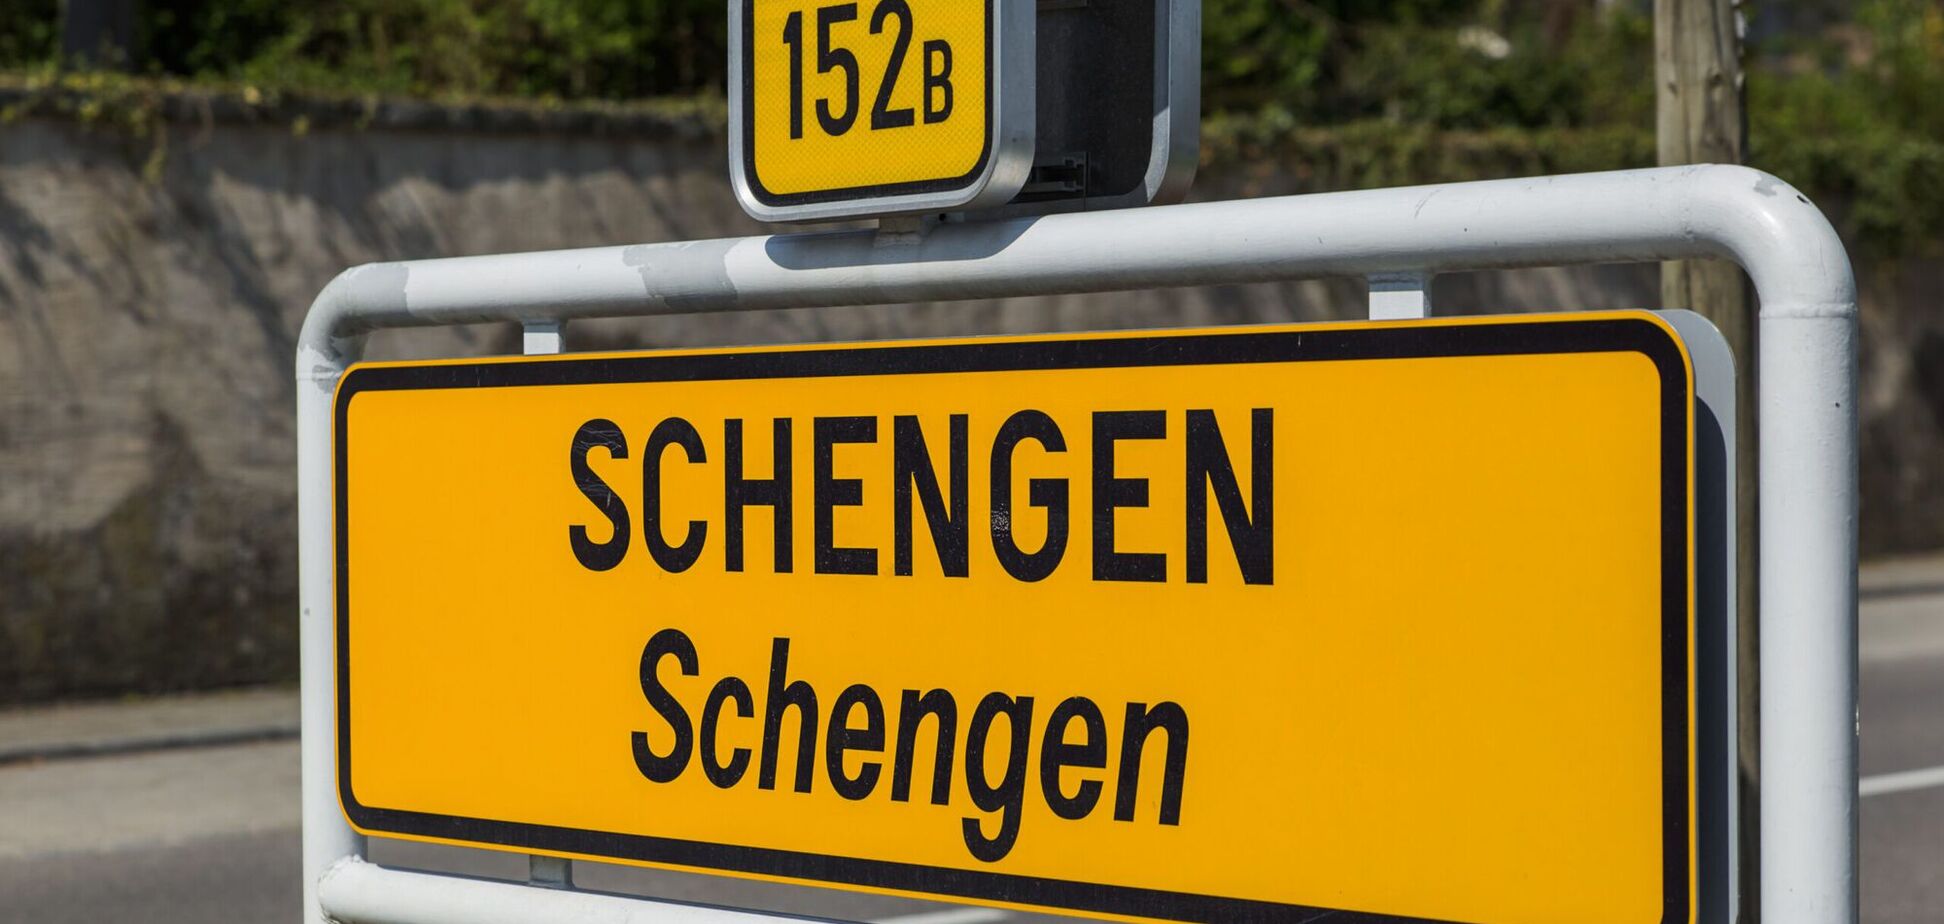 Болгария и Румыния присоединяются к Шенгенской зоне, но с ограничениями: что это значит